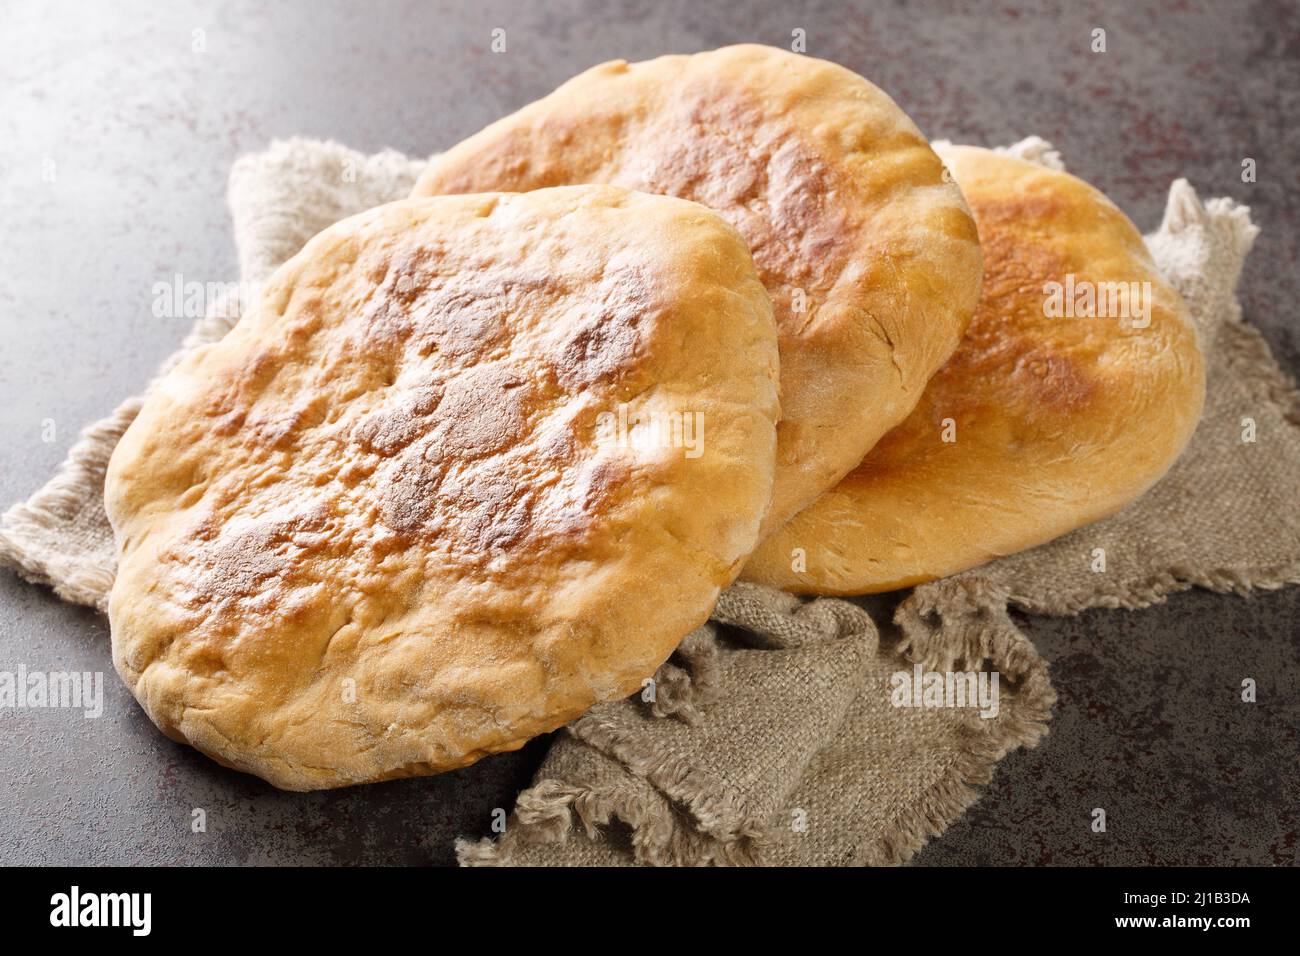 Palyanytsya ukrainische nationale Brot aus Weizenmehl Nahaufnahme auf dem Tisch gemacht. Horizontal Stockfoto